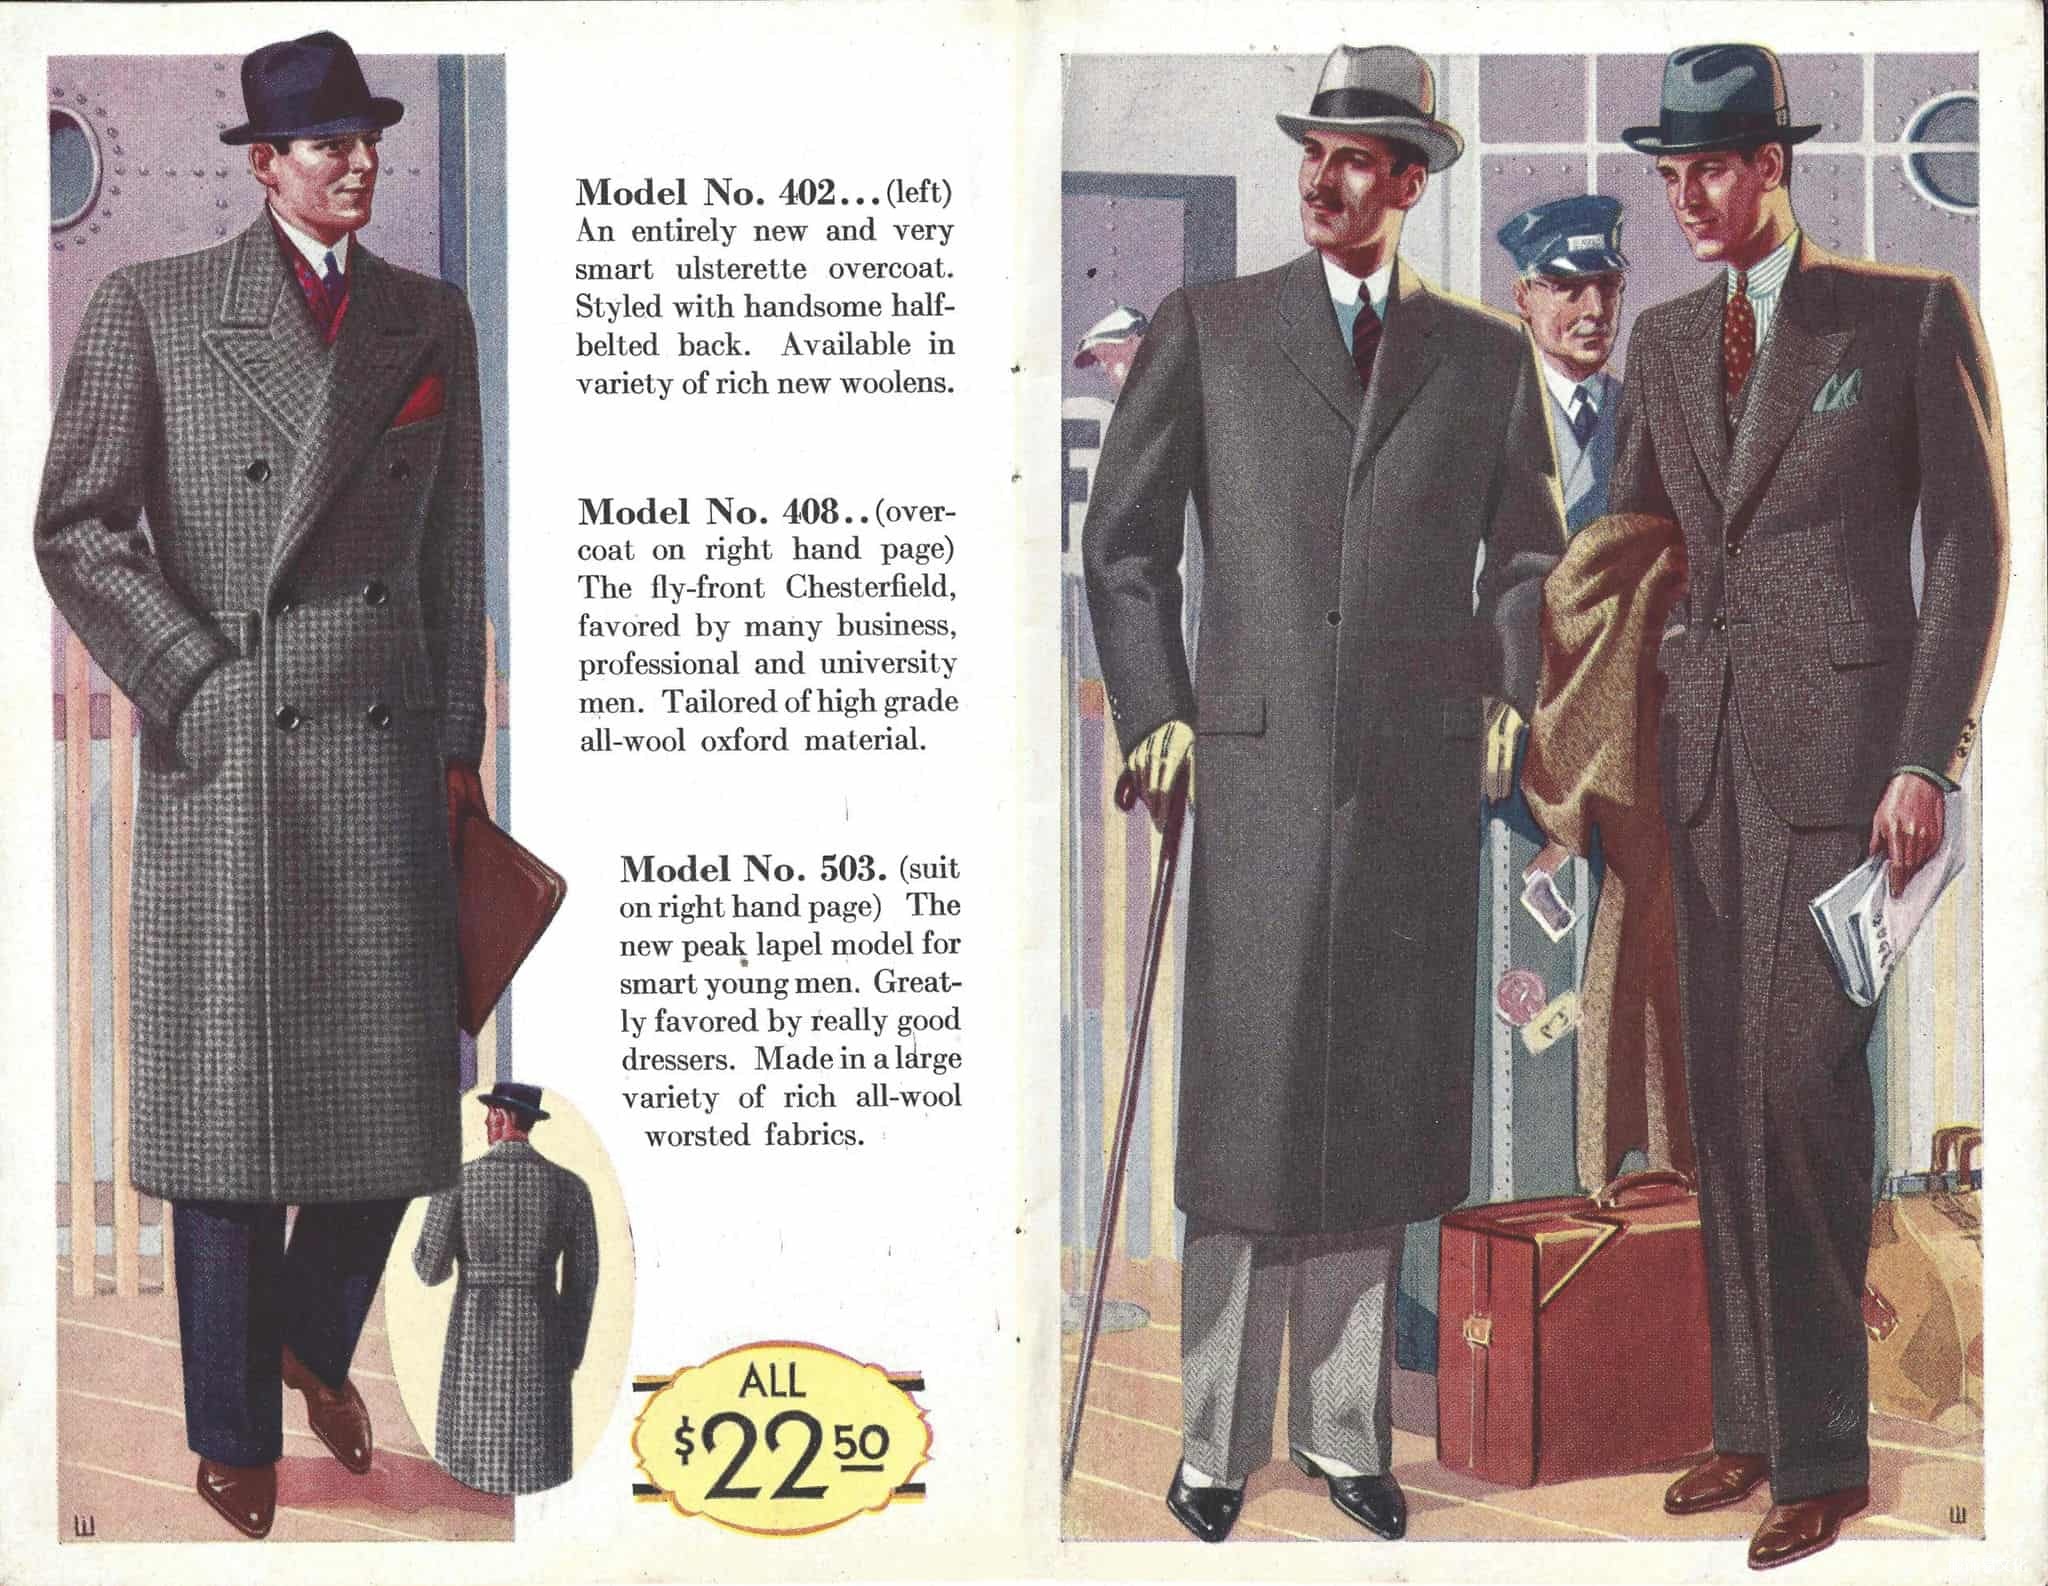 1930 年代，RICHMAN BROS. 男装秋冬款式小册子